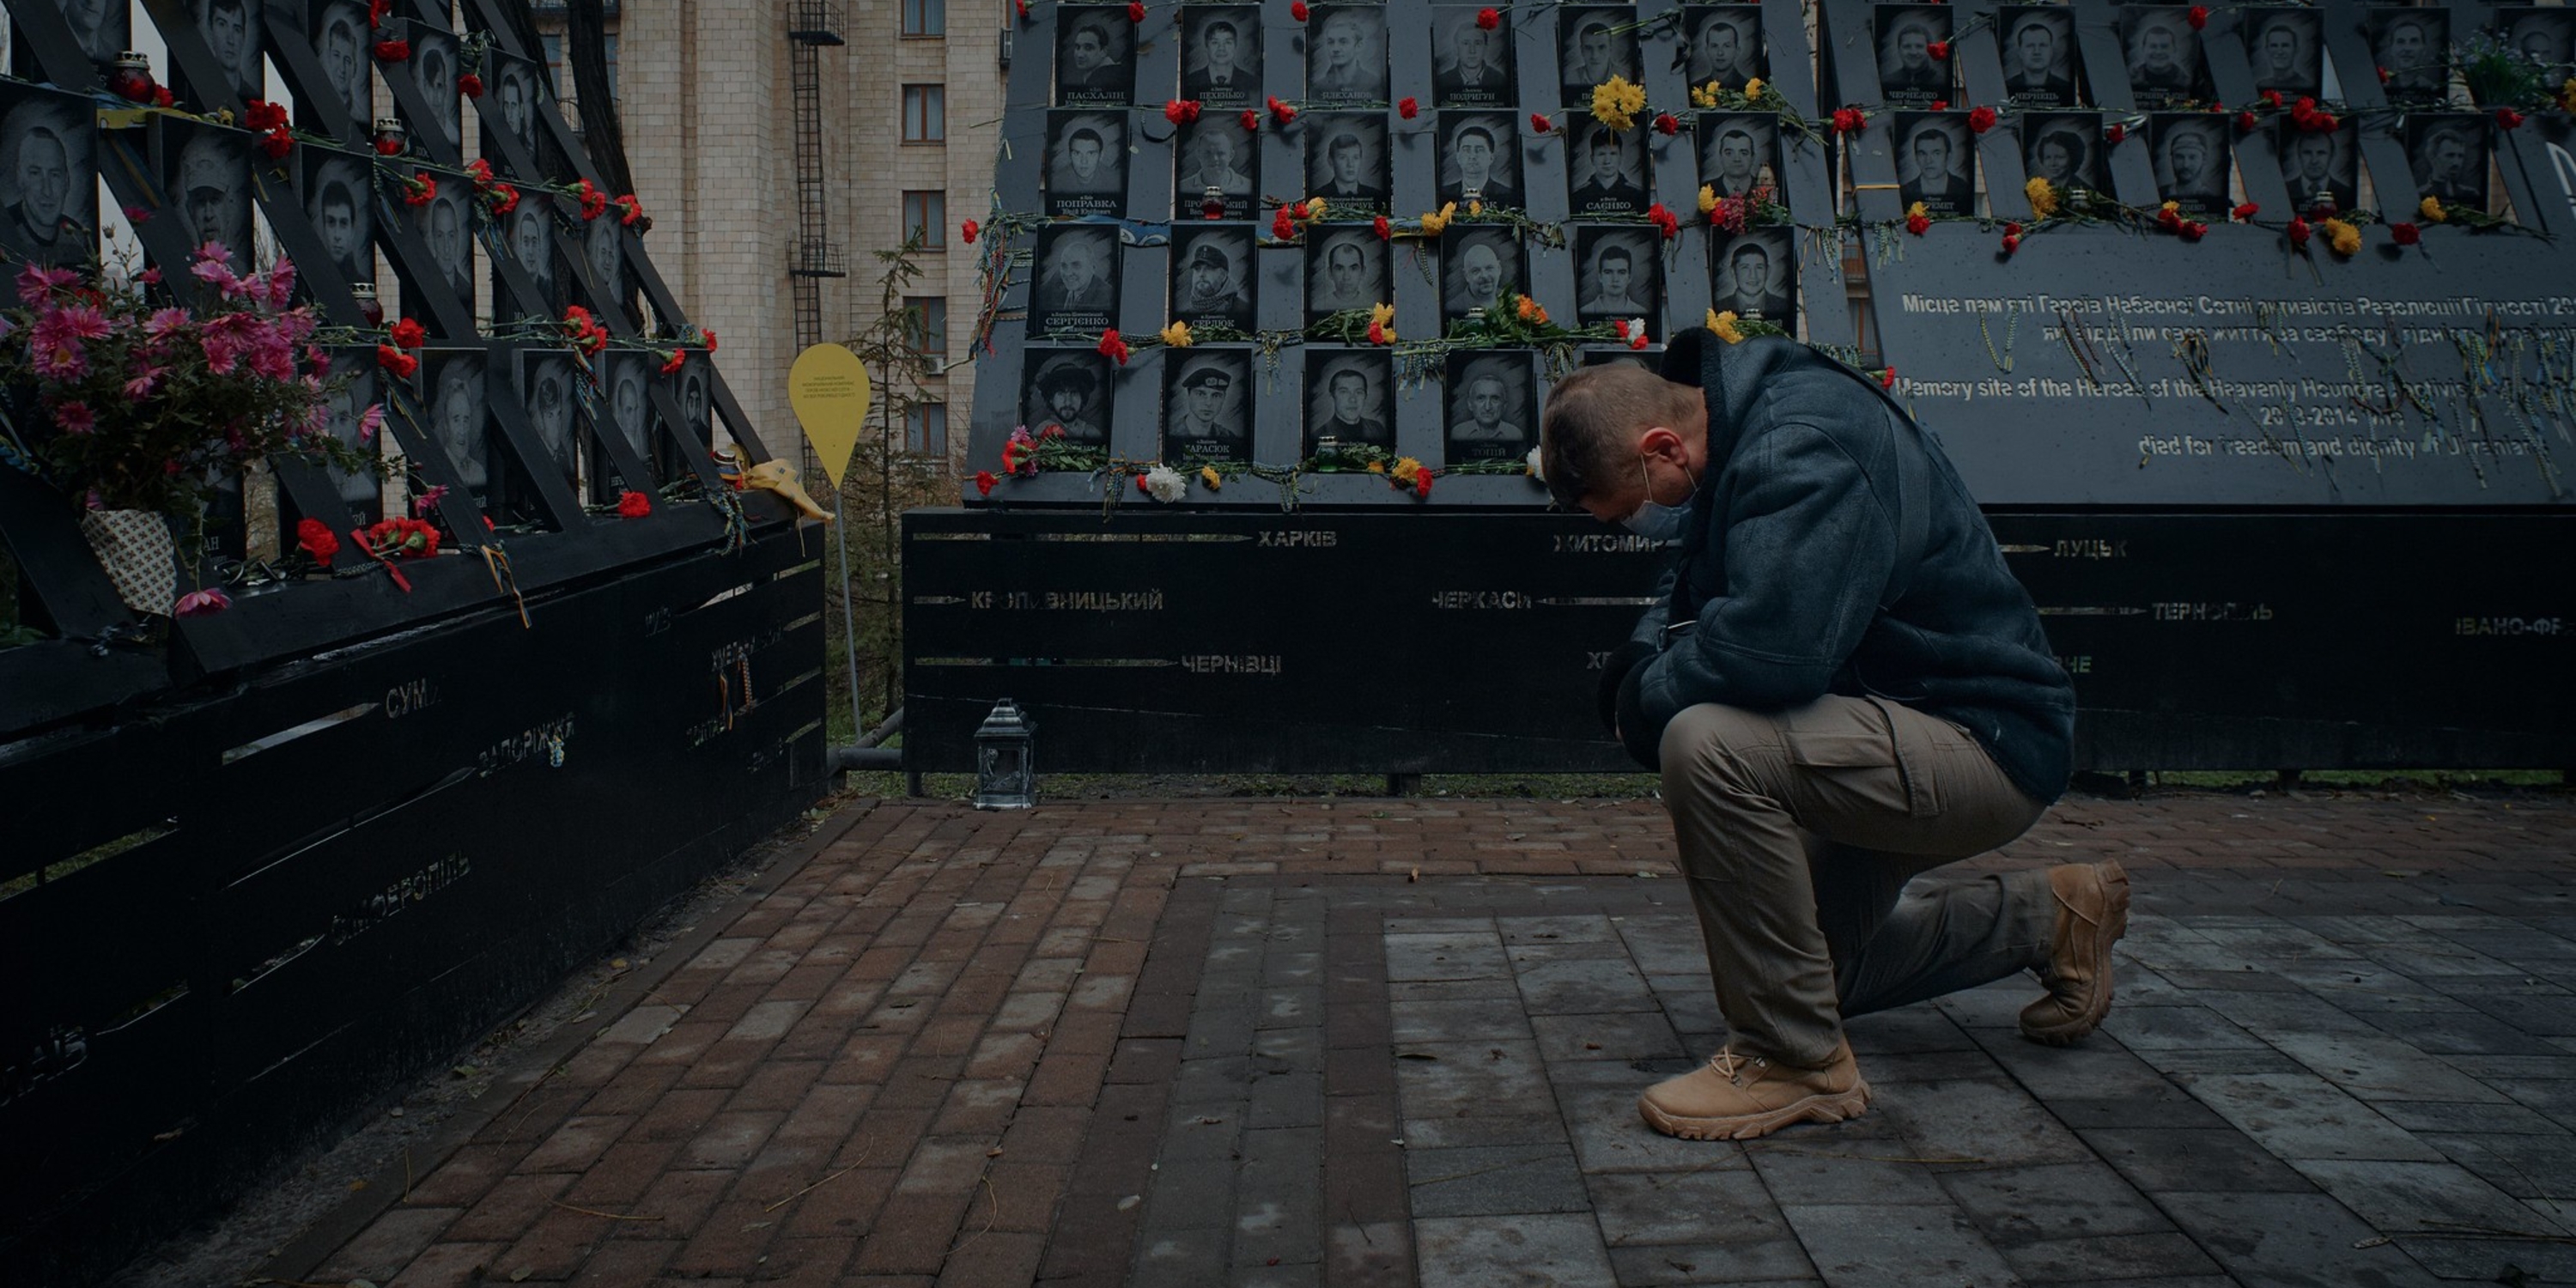 a man kneeling down near tributes to fallen heroes